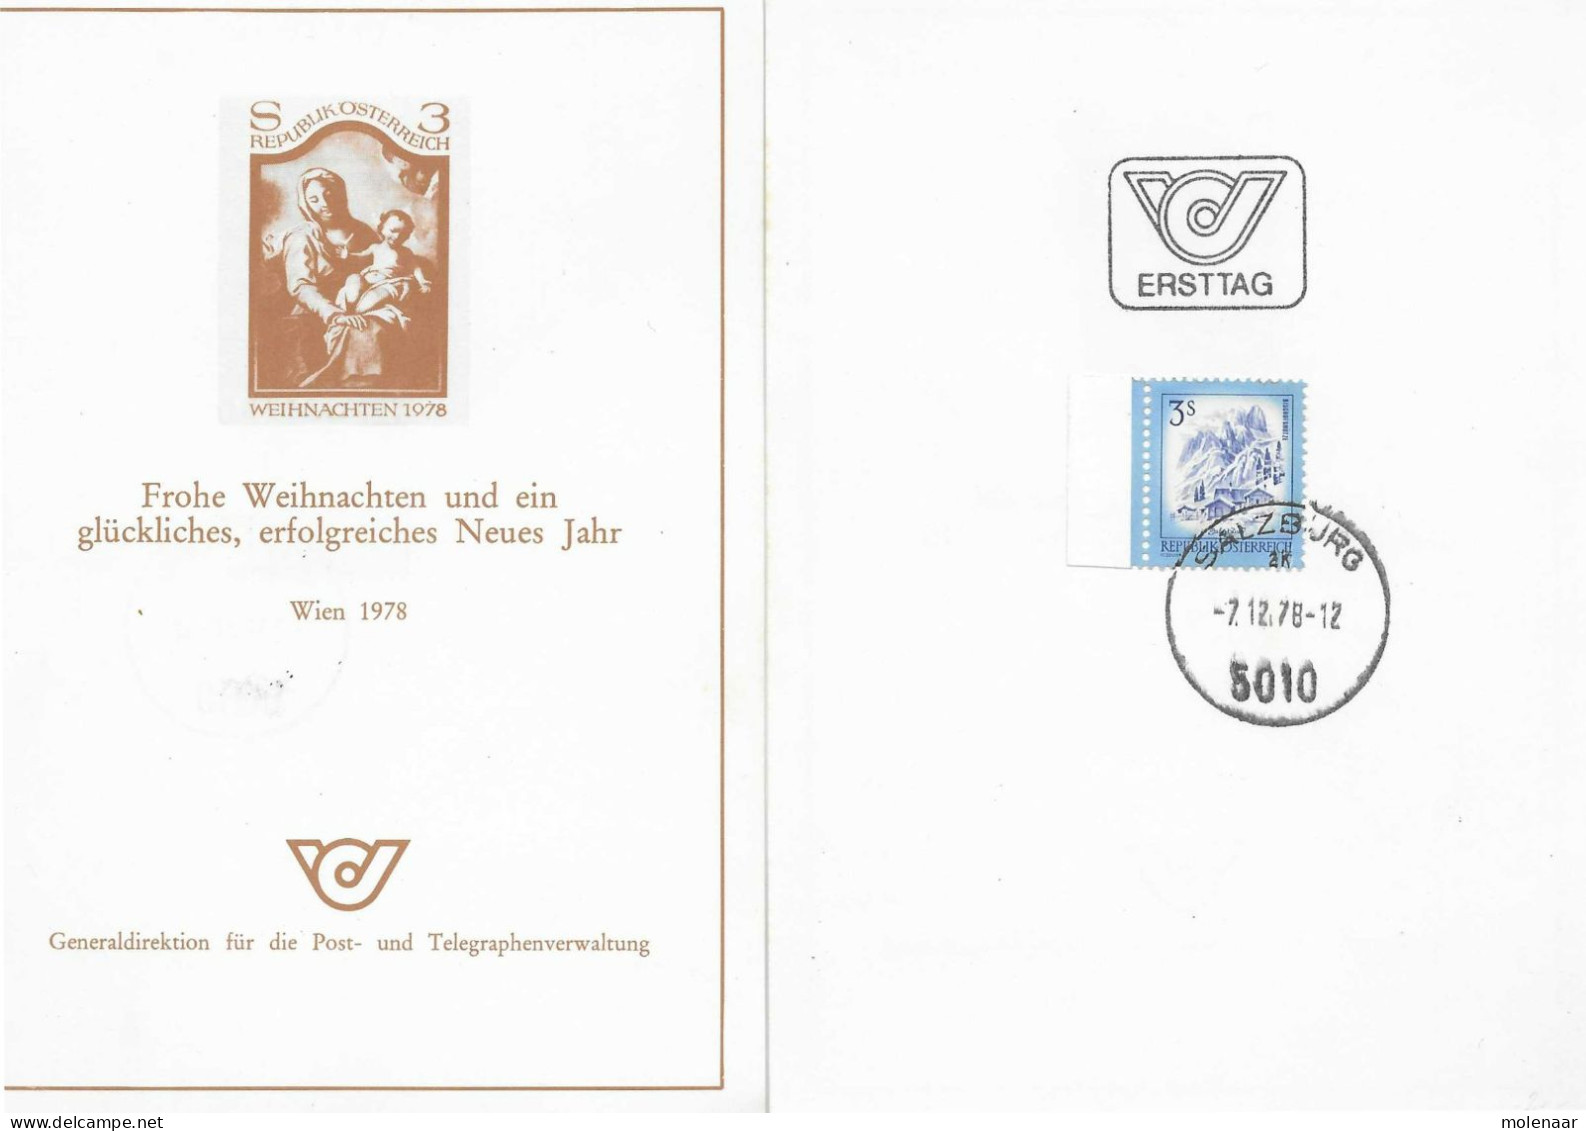 Postzegels > Europa > Oostenrijk >  Republiek > 1971-1900 > Kaart Uit 1978  Met 1 Postzegel (17770) - Covers & Documents